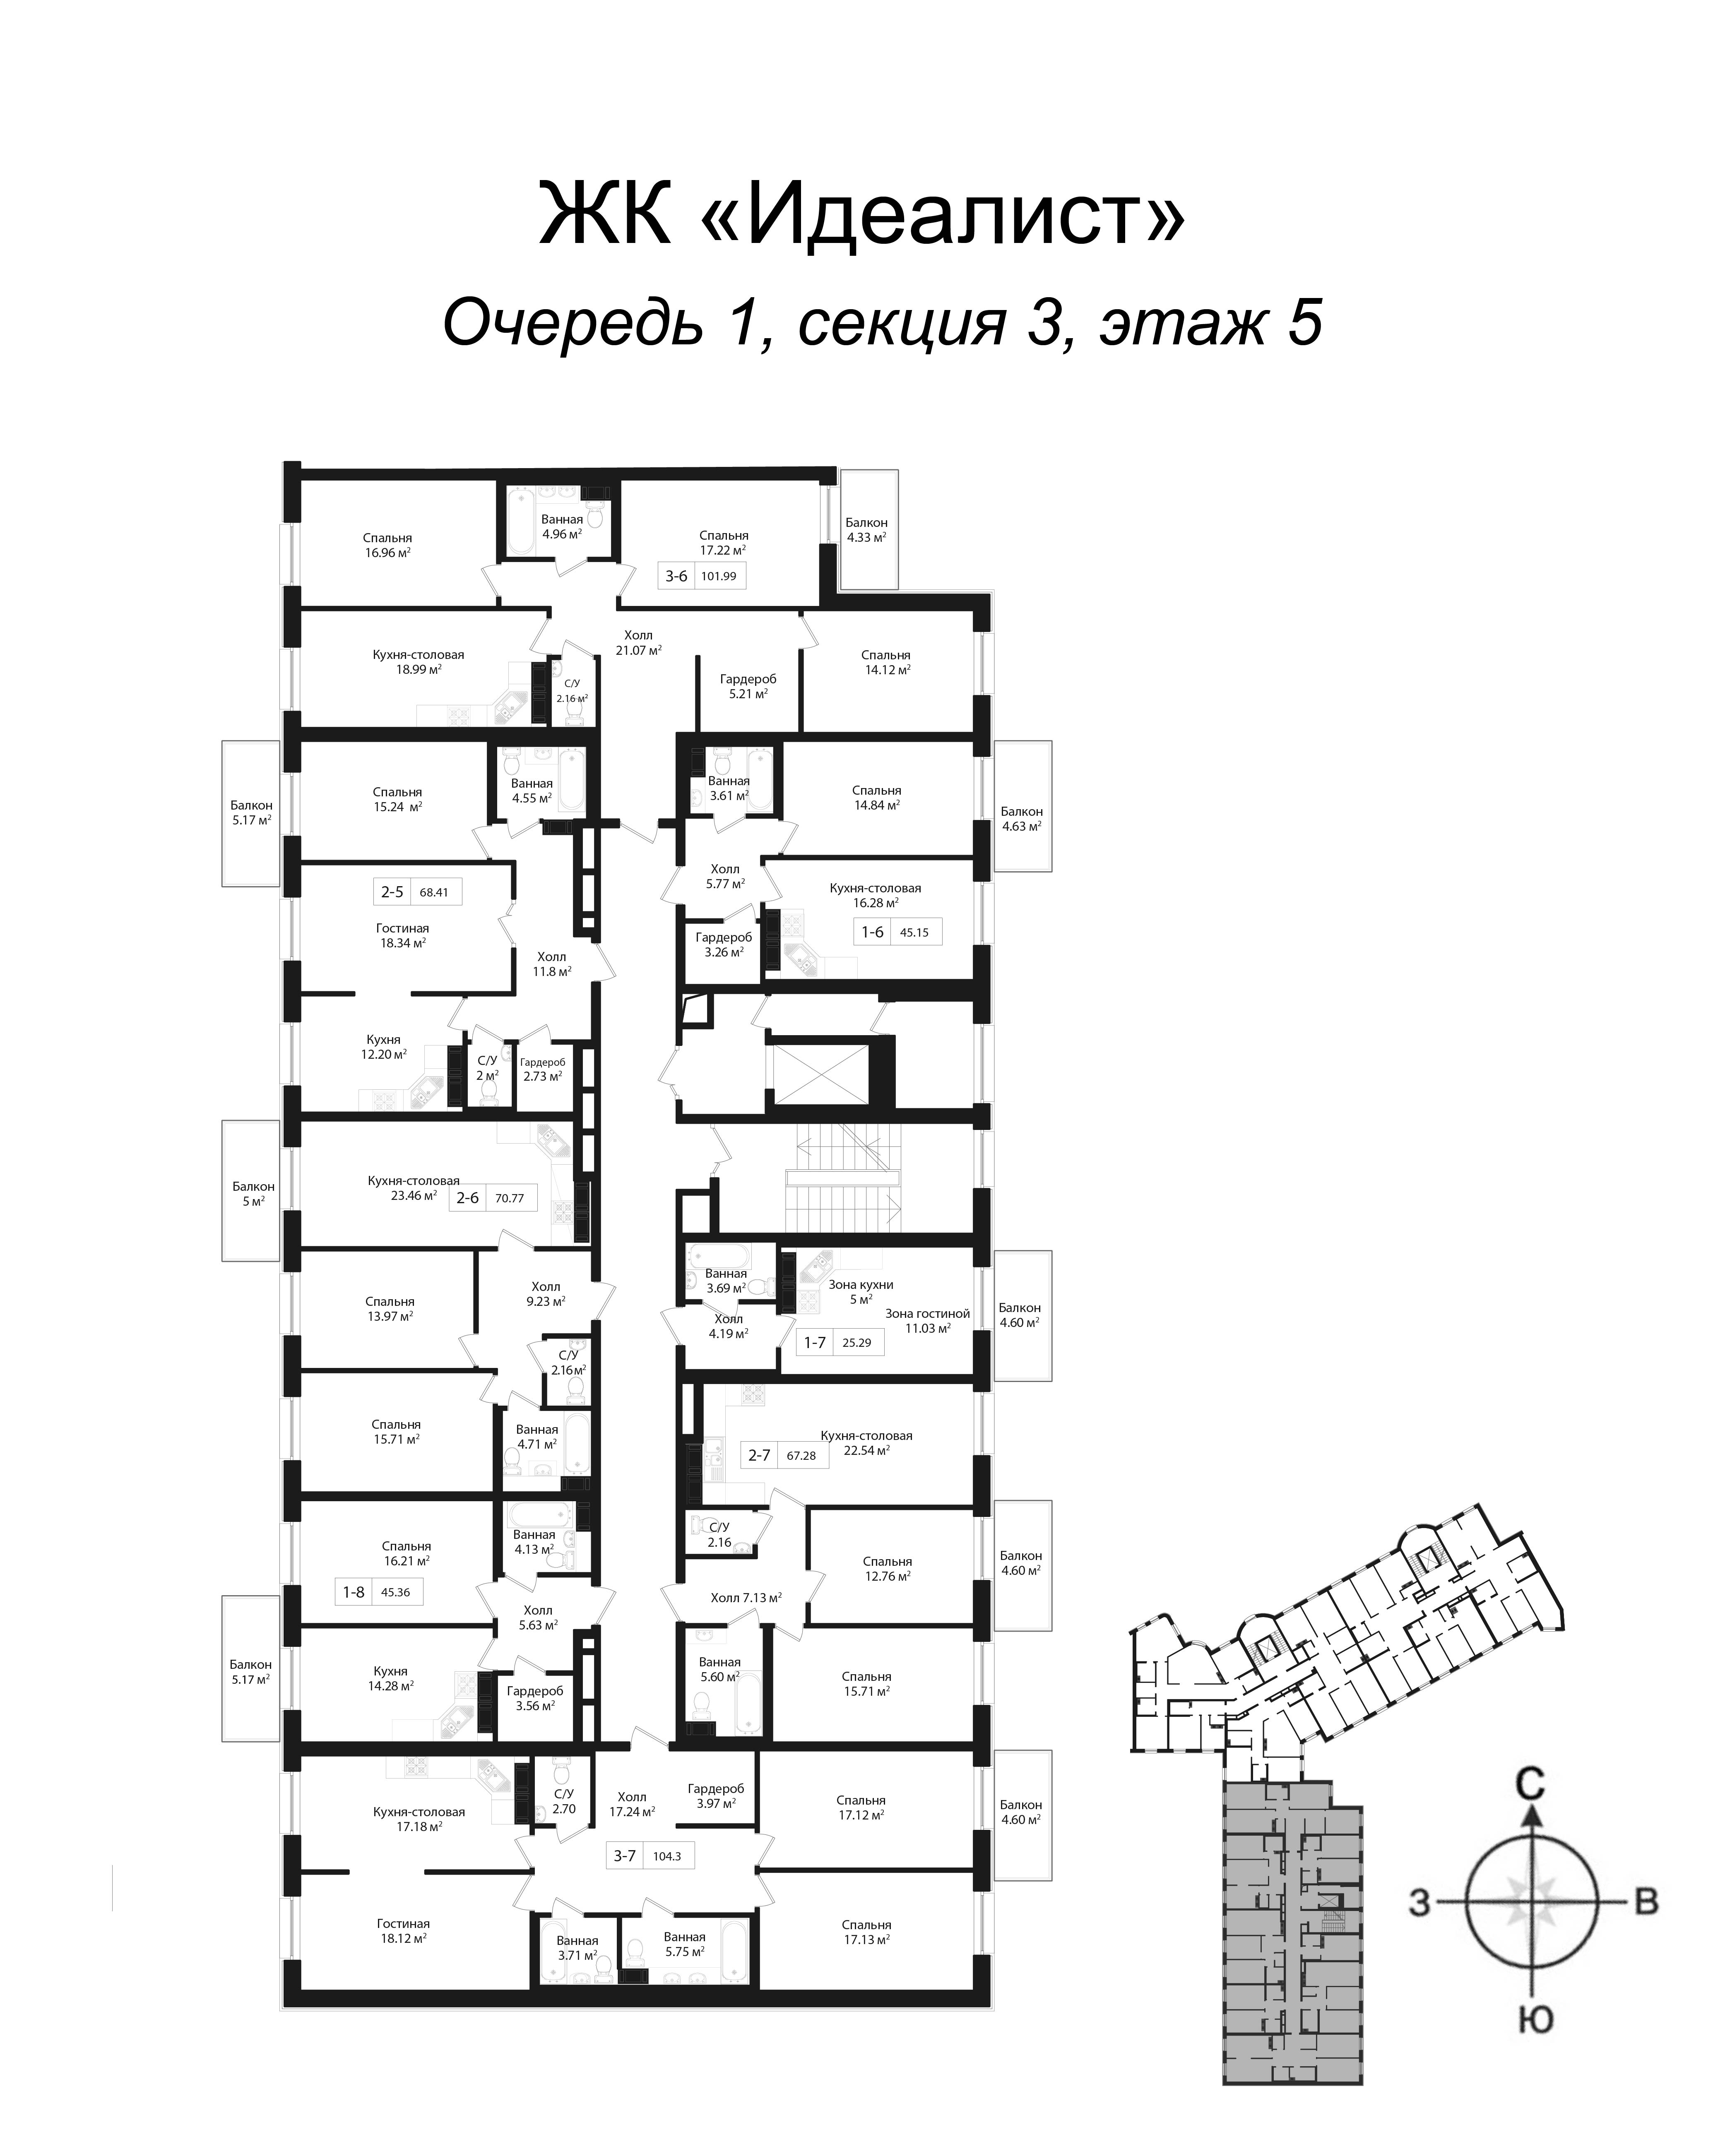 3-комнатная квартира, 102.1 м² в ЖК "Идеалист" - планировка этажа